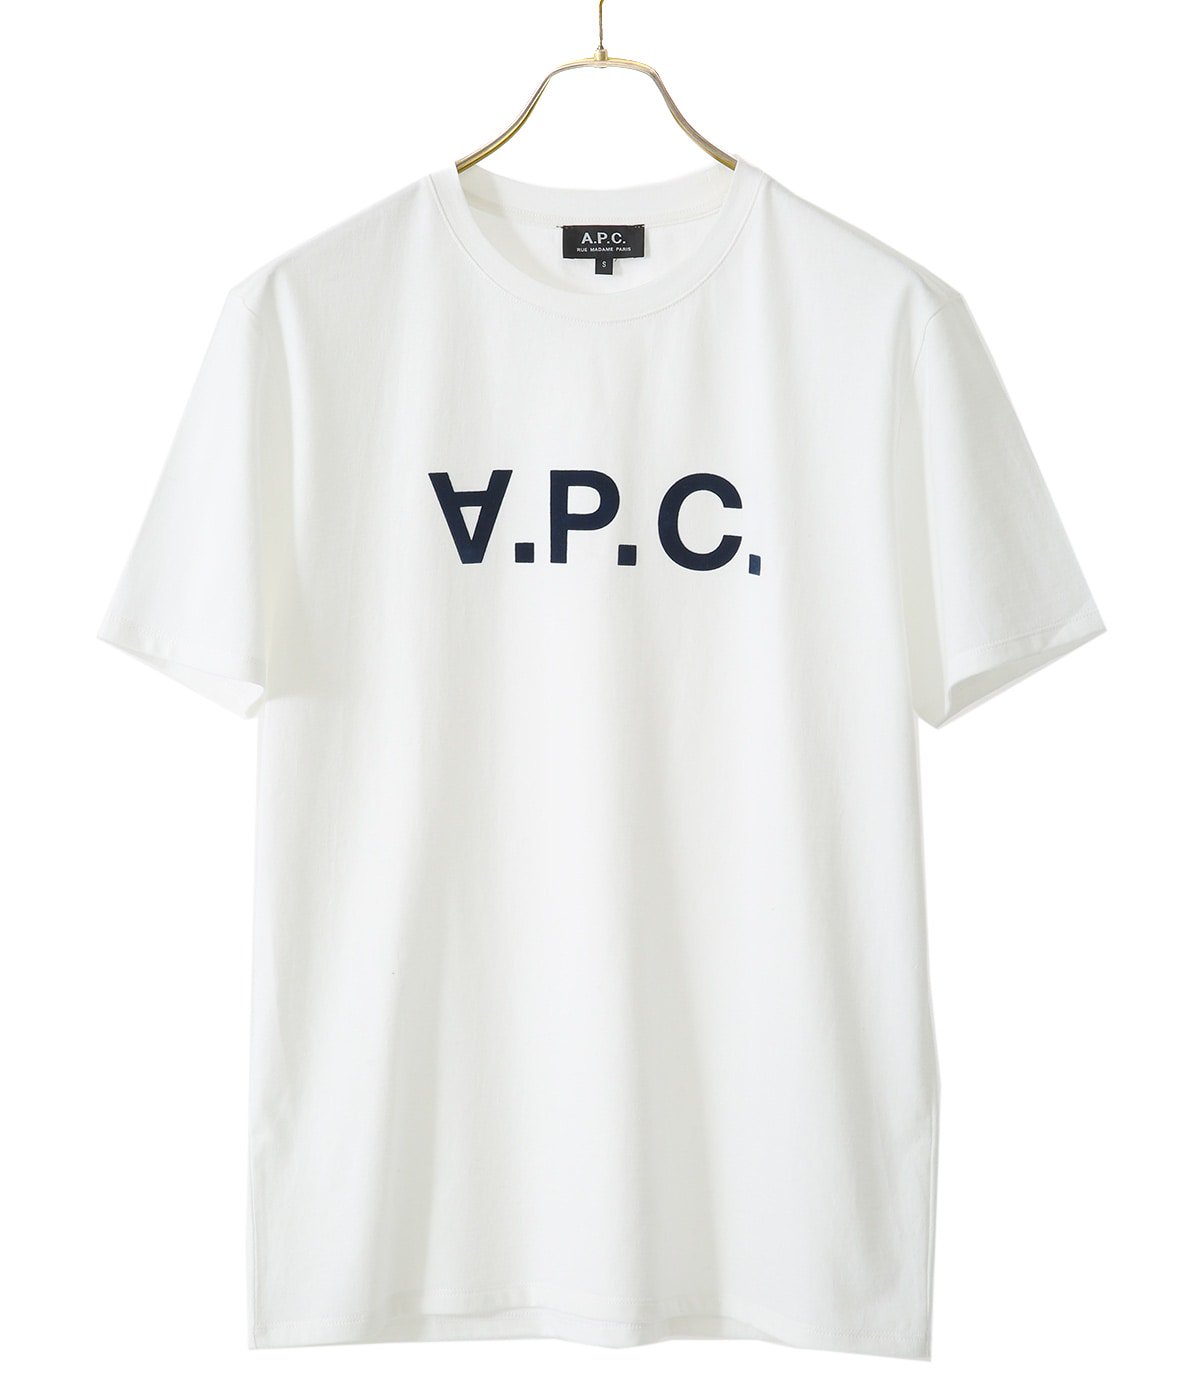 新着 VPC Tシャツ A.P.C. BLANC cobqxh26586-iakWHM メンズM T M'S Tシャツ・カットソー  サイズを選択してください:M - raffles.mn